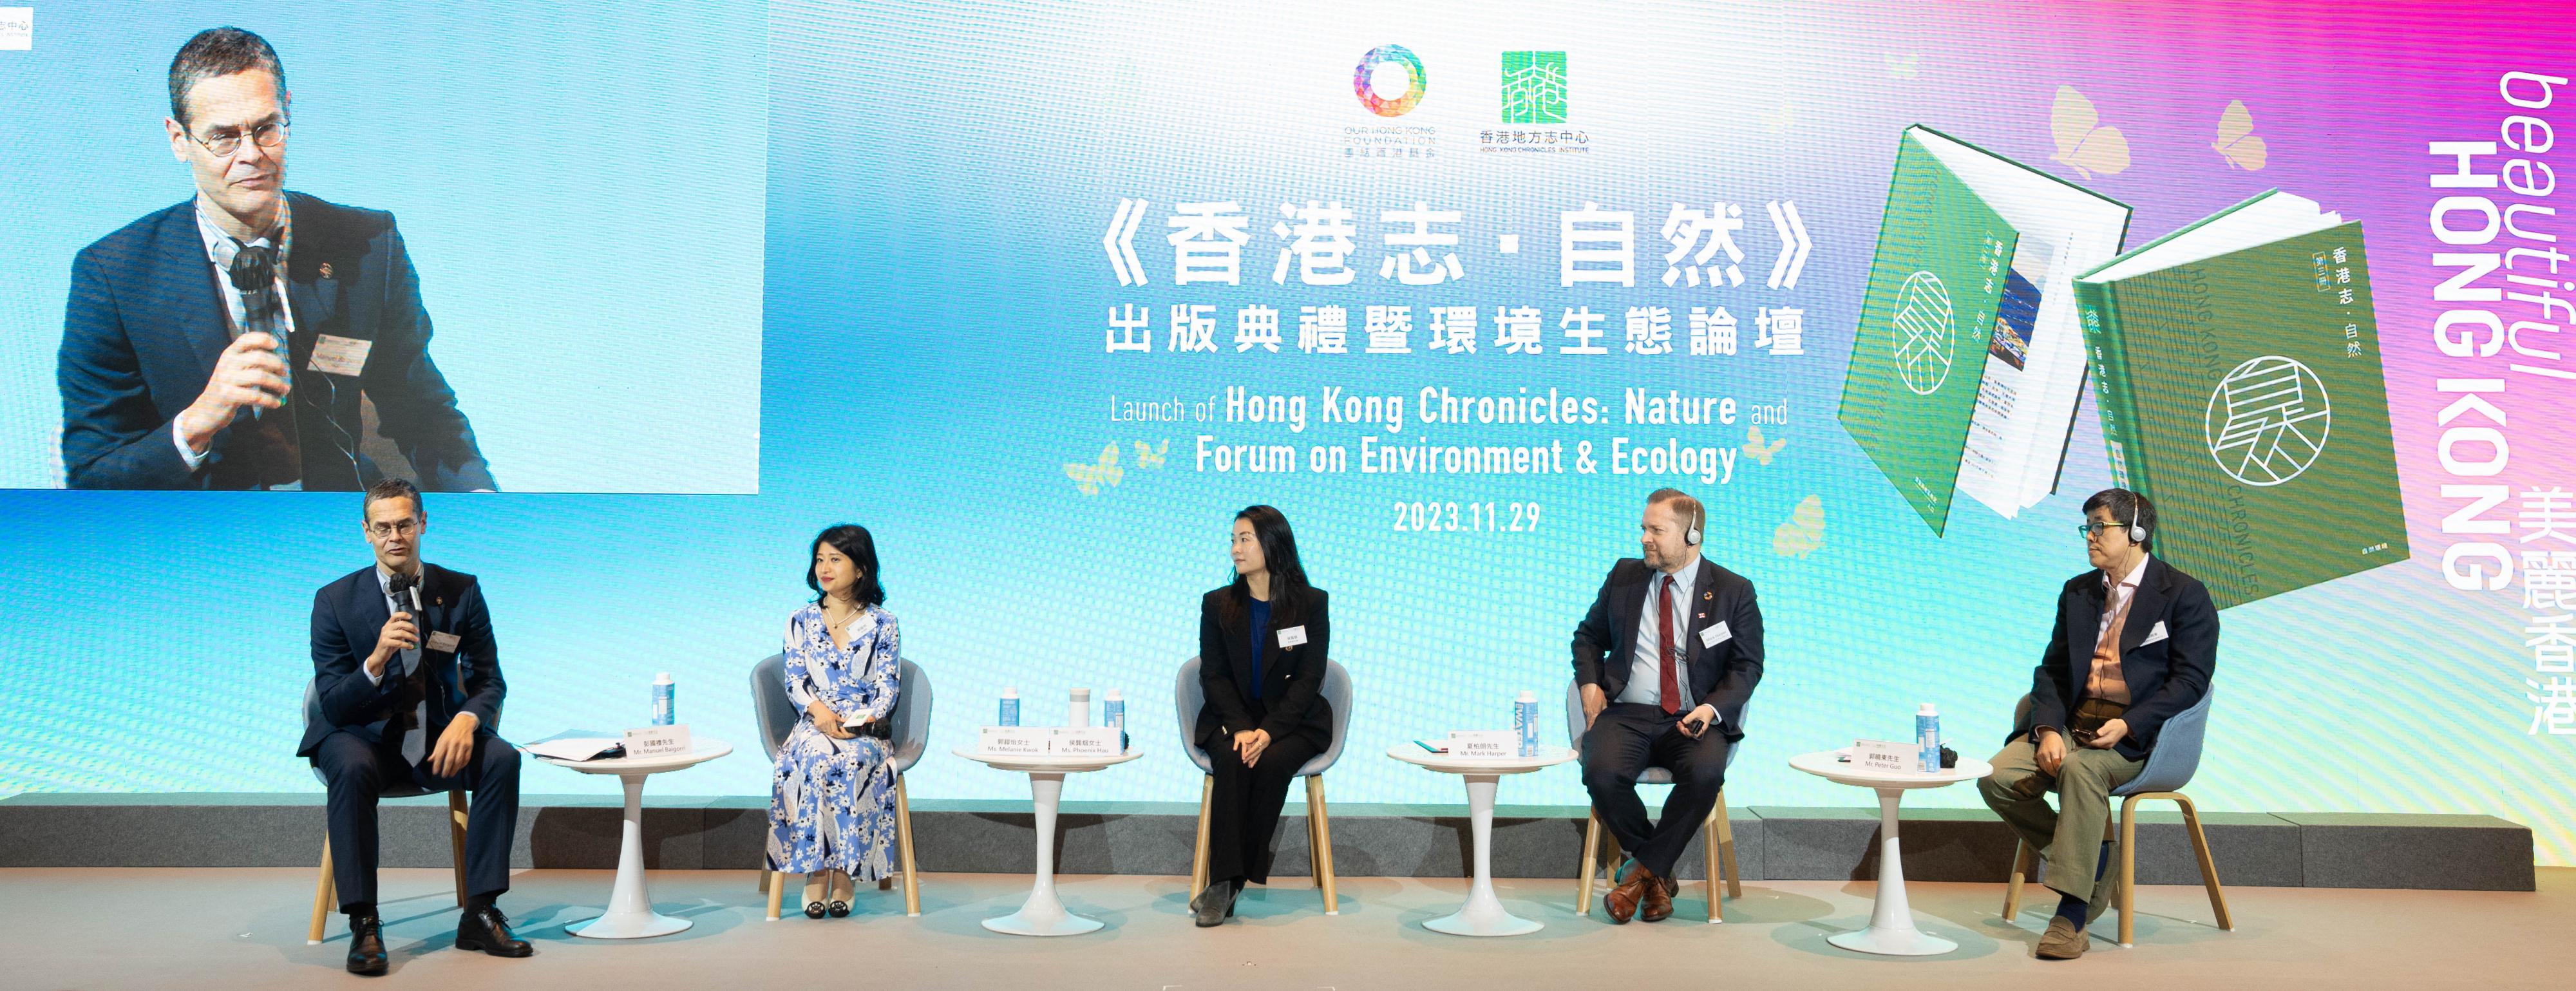 第二場專題討論題為《ESG : 挑戰與機遇——探討企業在綠色經濟轉型下的角色與責任》。香港賽馬會持續發展部主管彭國禮先生（左一）擔任主持，主講嘉賓包括：（左二起）信和集團助理可持續發展總經理郭鎧怡女士、香港海洋公園可持續發展部主管侯龔烟女士、香港太古集團可持續發展事務總監夏柏朗先生，以及華潤置地(海外)有限公司總設計師郭曉東先生。    